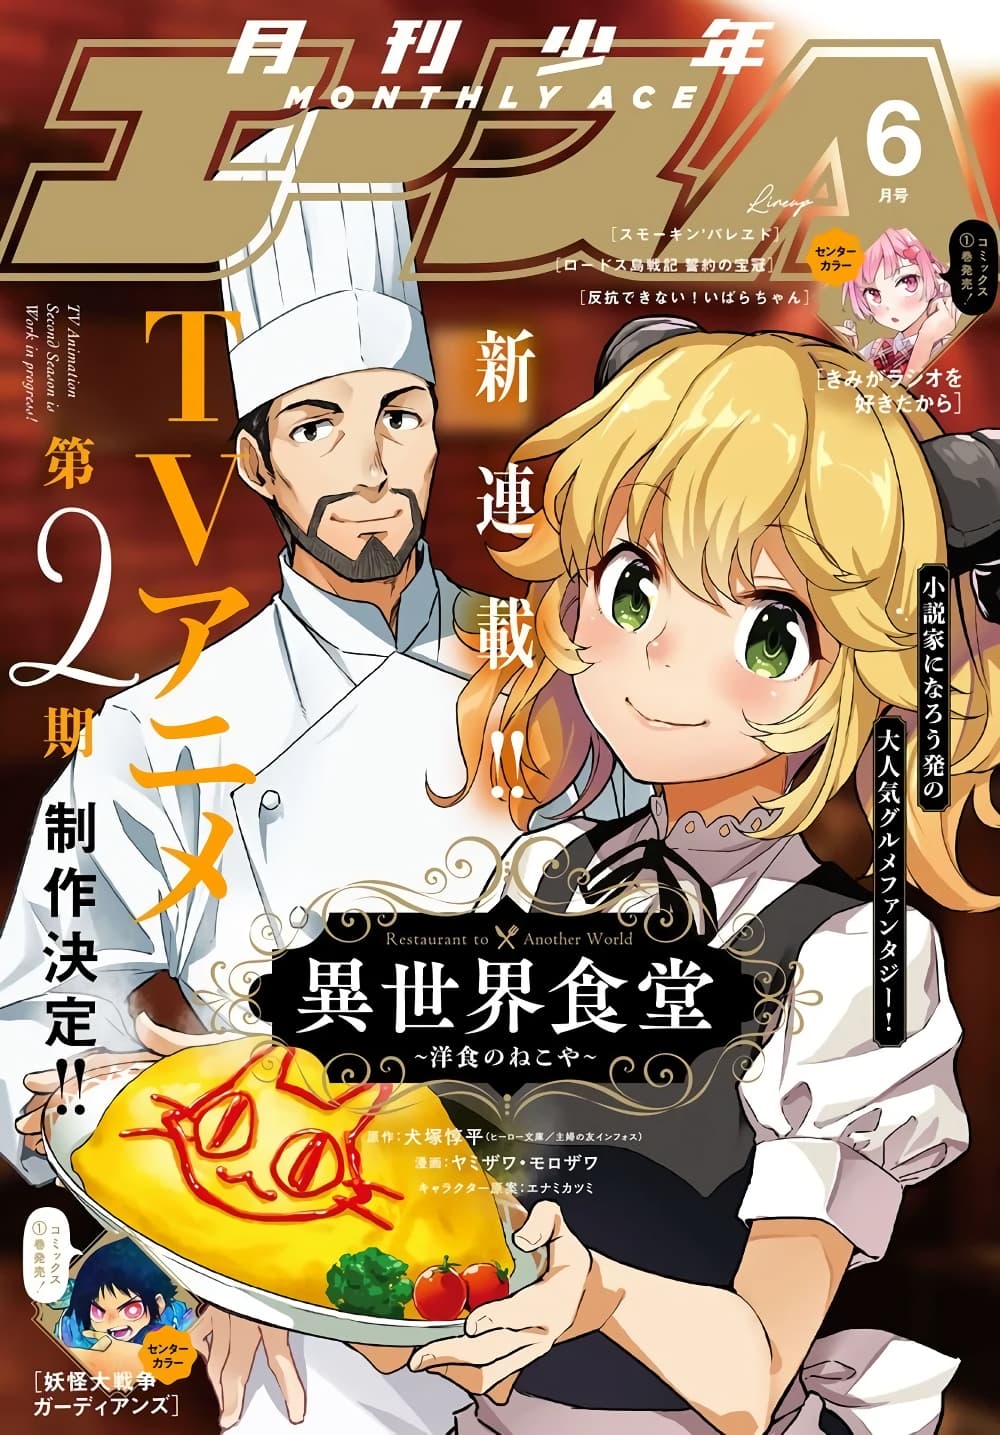 AnimeKimi - Isekai Shokudou 2 ร้านอาหารต่างโลก (ภาค2)